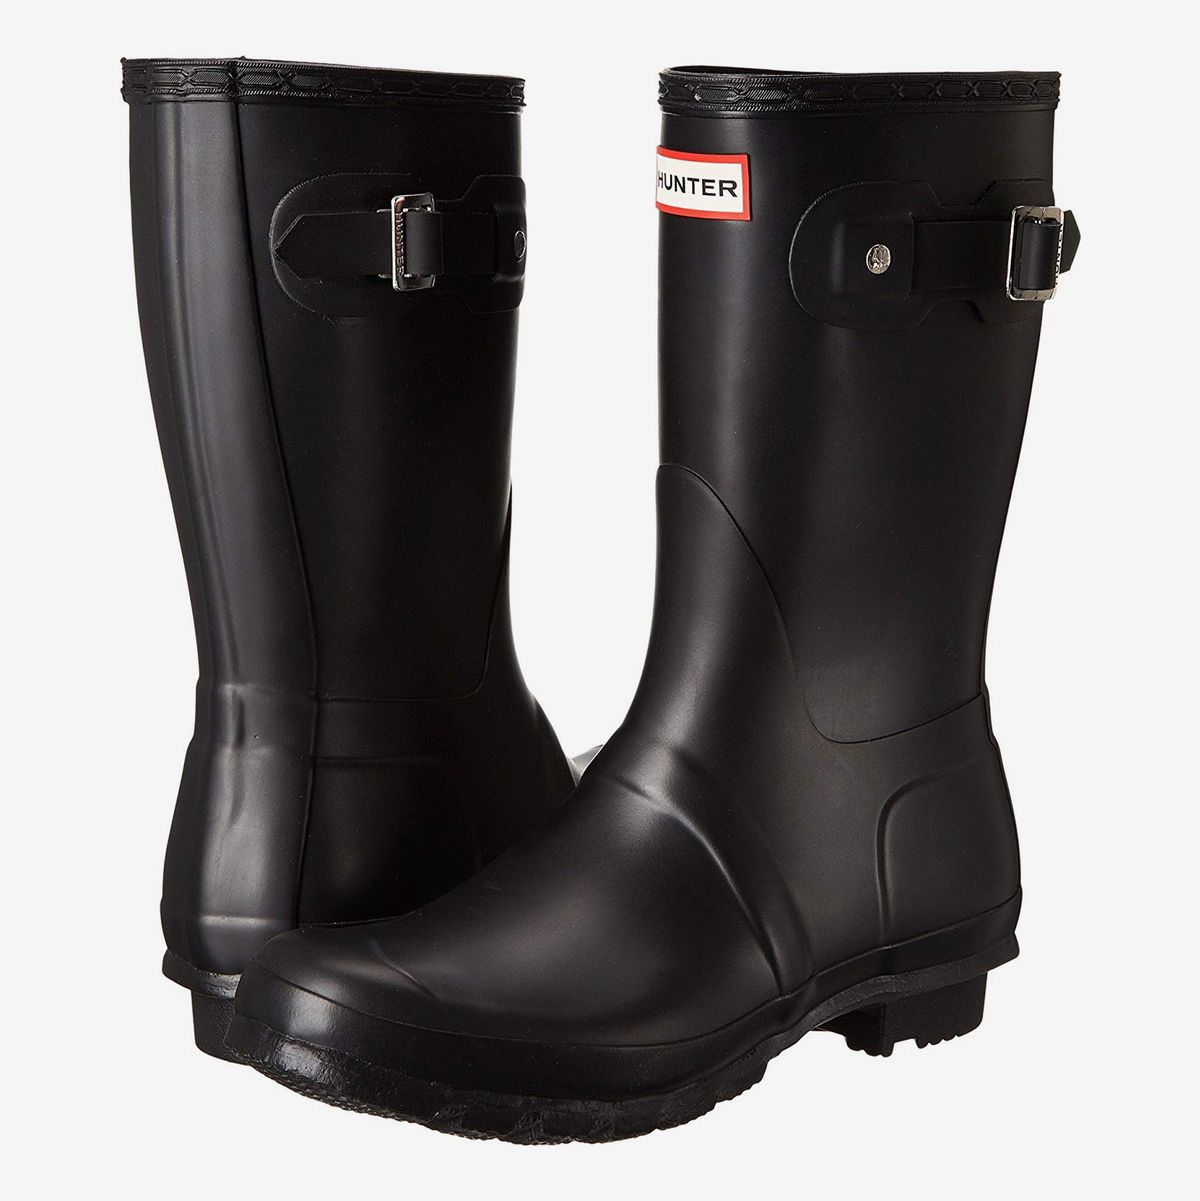 pretty rain boots for women